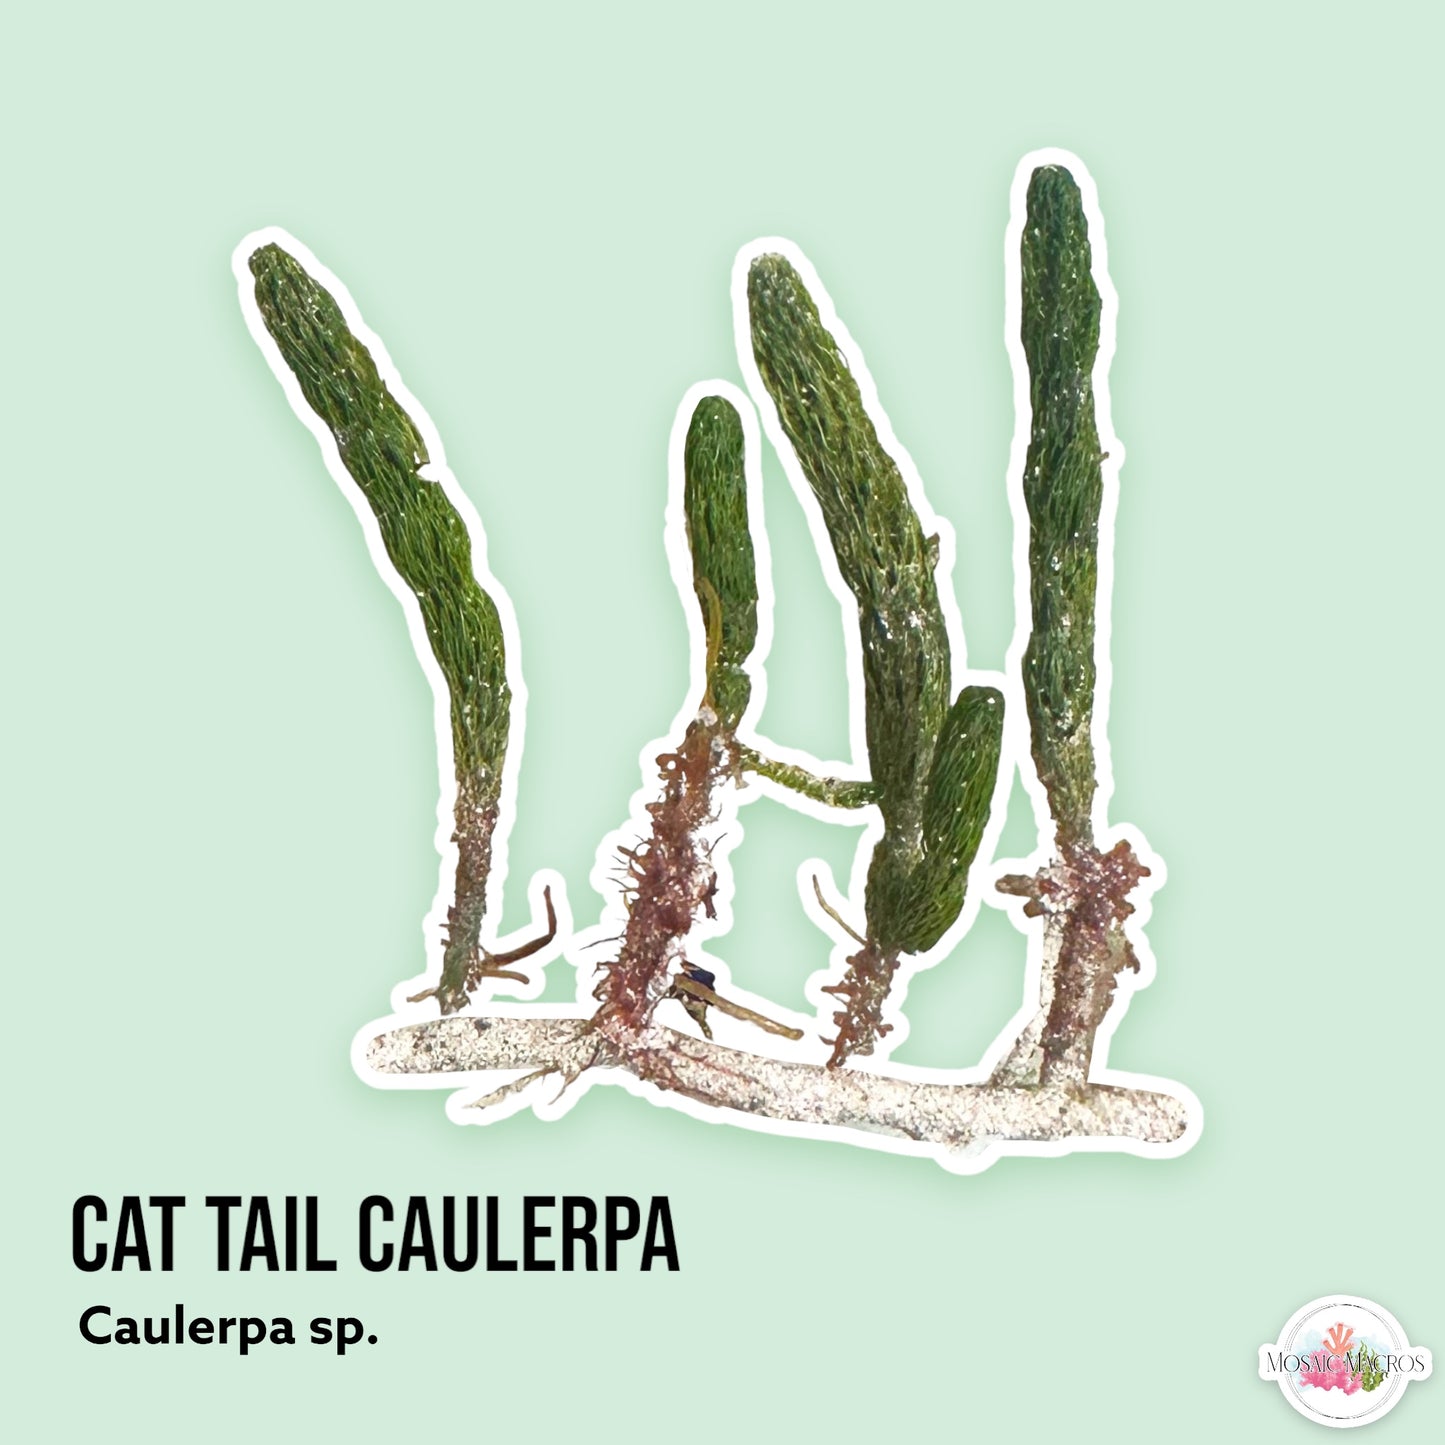 Cat Tail Caulerpa | Caulerpa sp.